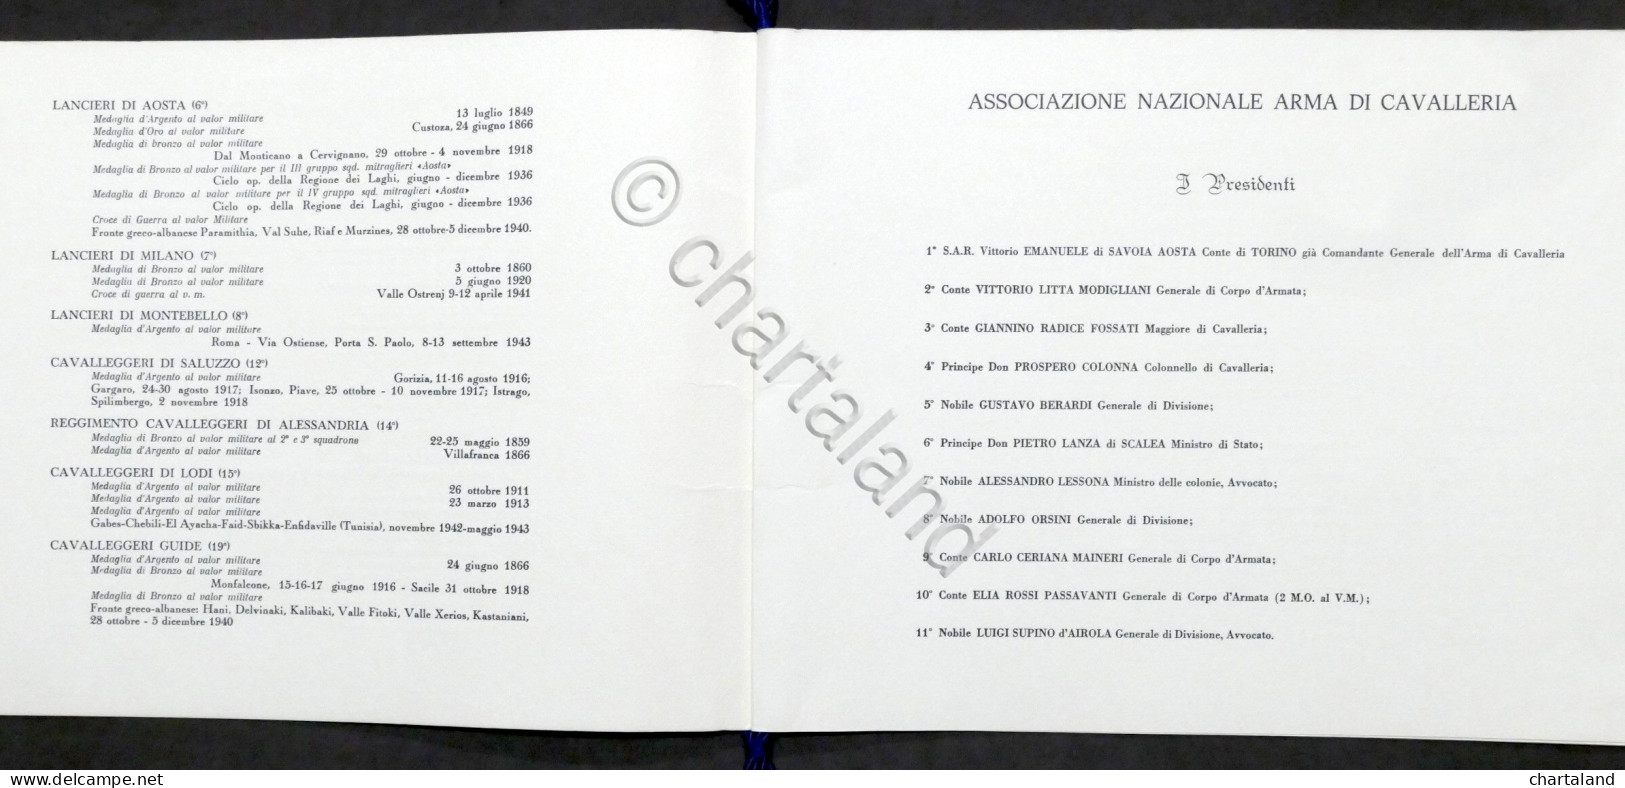 Fregi, Baveri, Manopole E Bande Dei Corpi Di Cavalleria - Calendario 1973 - Otros & Sin Clasificación